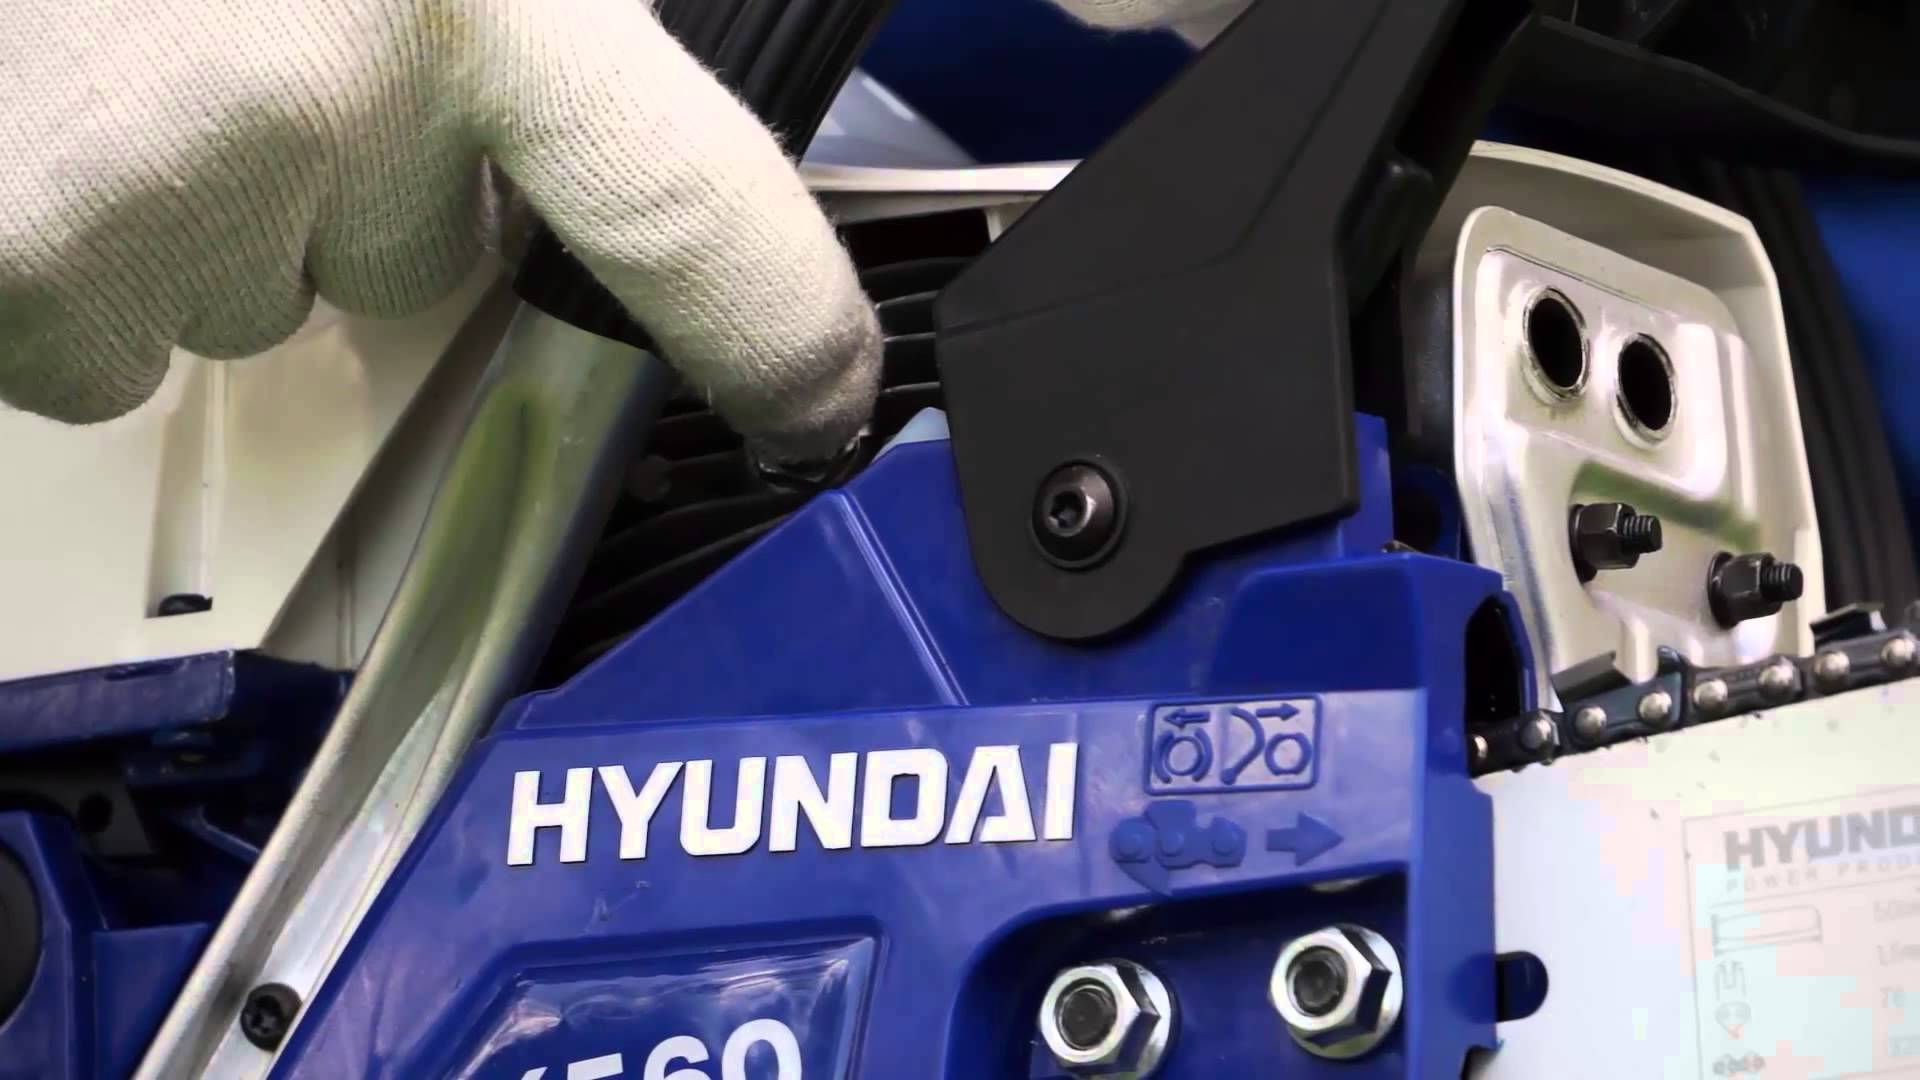 Teste e experiências com motosserras Hyundai: Uma visão abrangente da série de modelos de motosserras Hyundai